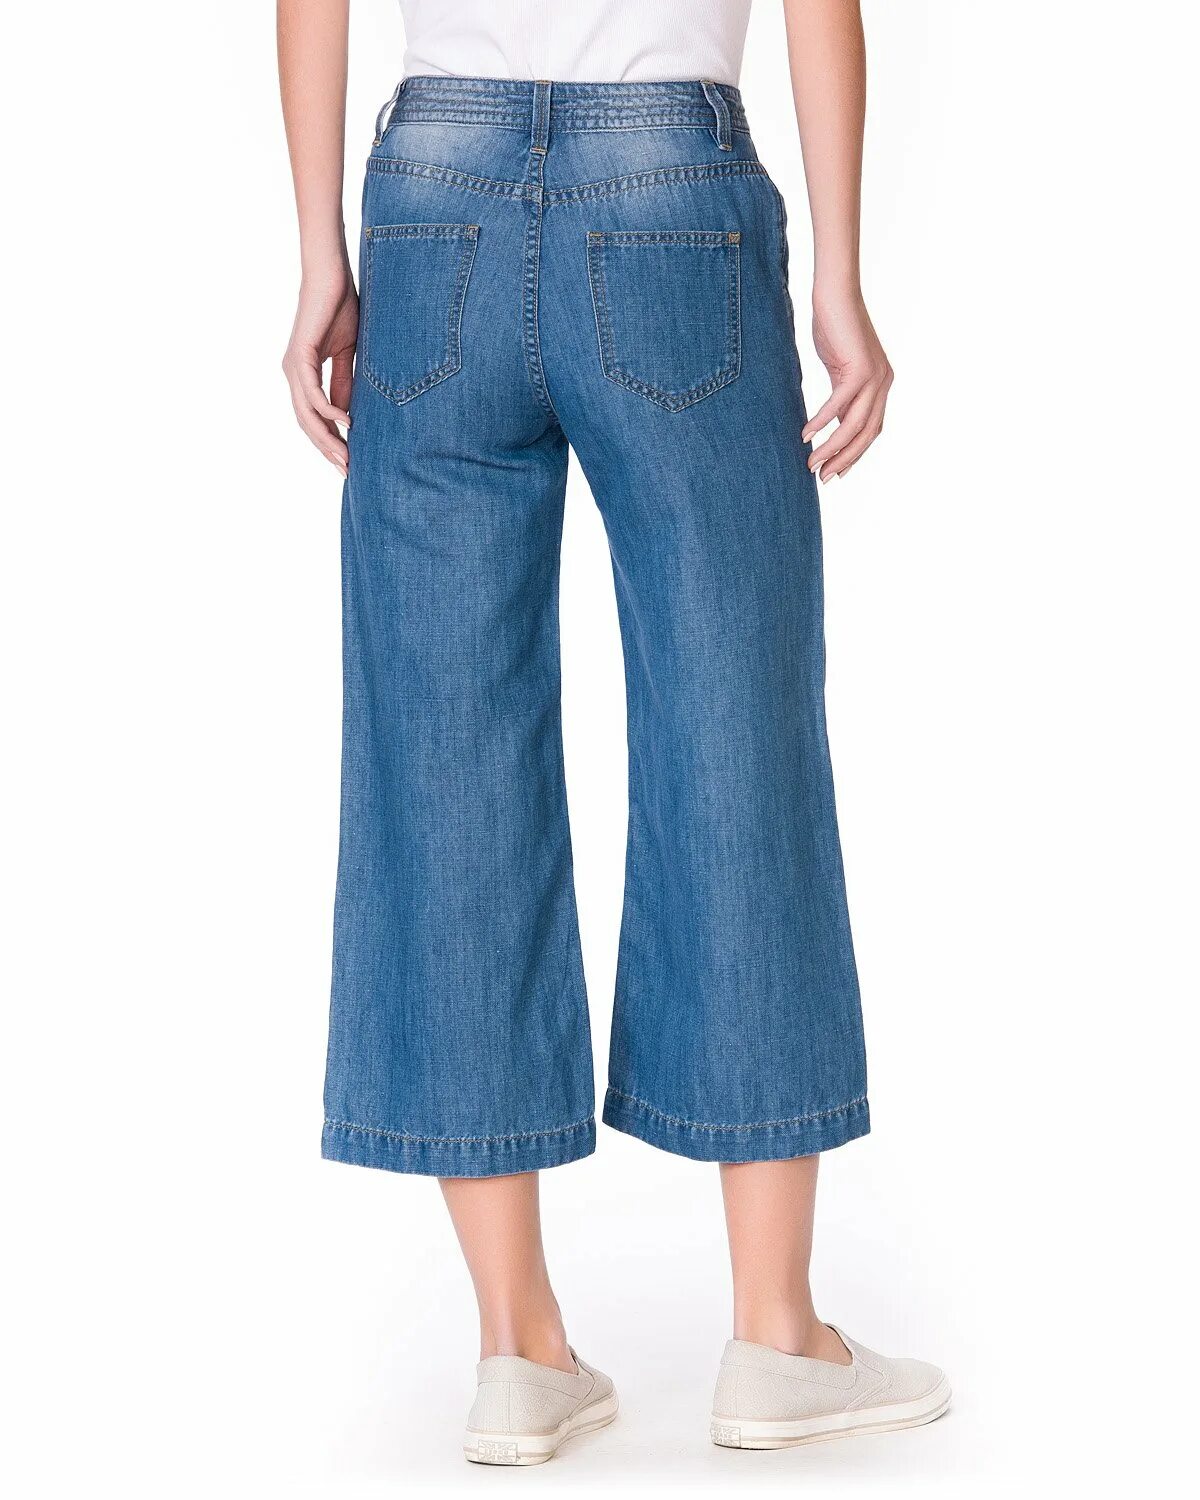 Облегченный джинсы. Джинсы облегченные женские. Облегчённые джинсы женские. Джинсы Мальвины. Облегченный джинс.